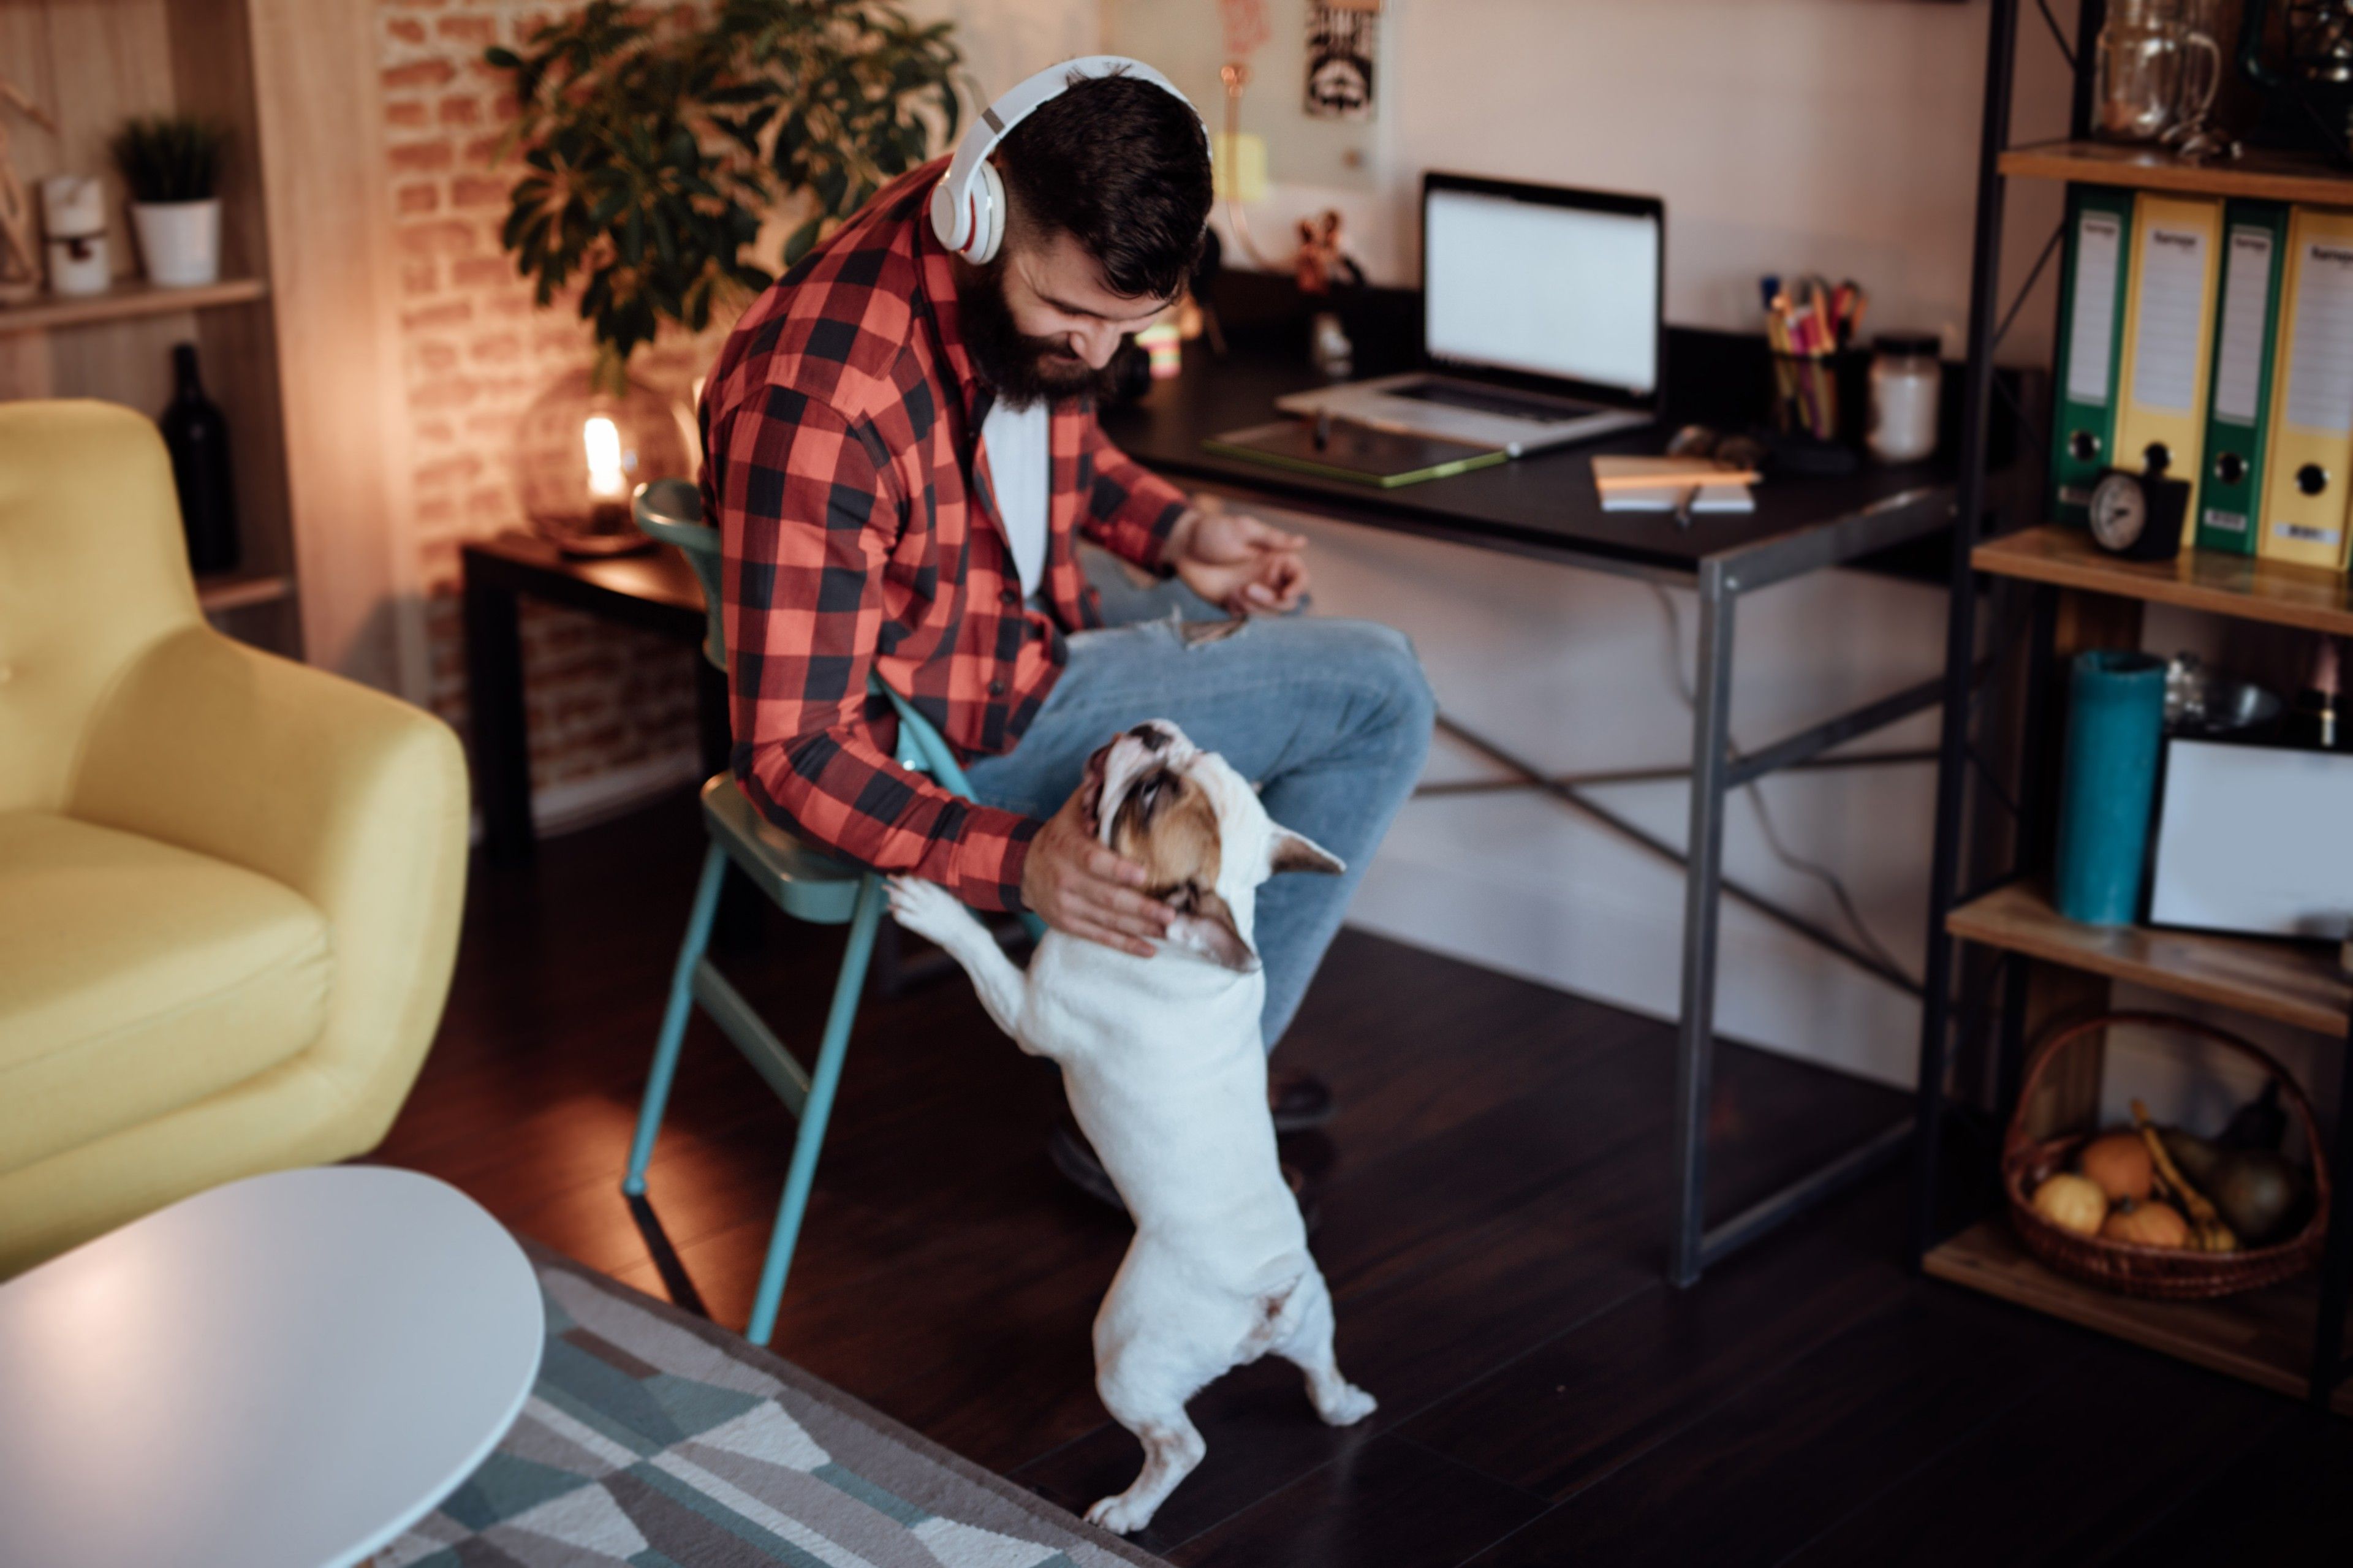 En distansarbetare arbetar från hemmets trygga vrå och tillbringar tid med sina husdjur under jobbet